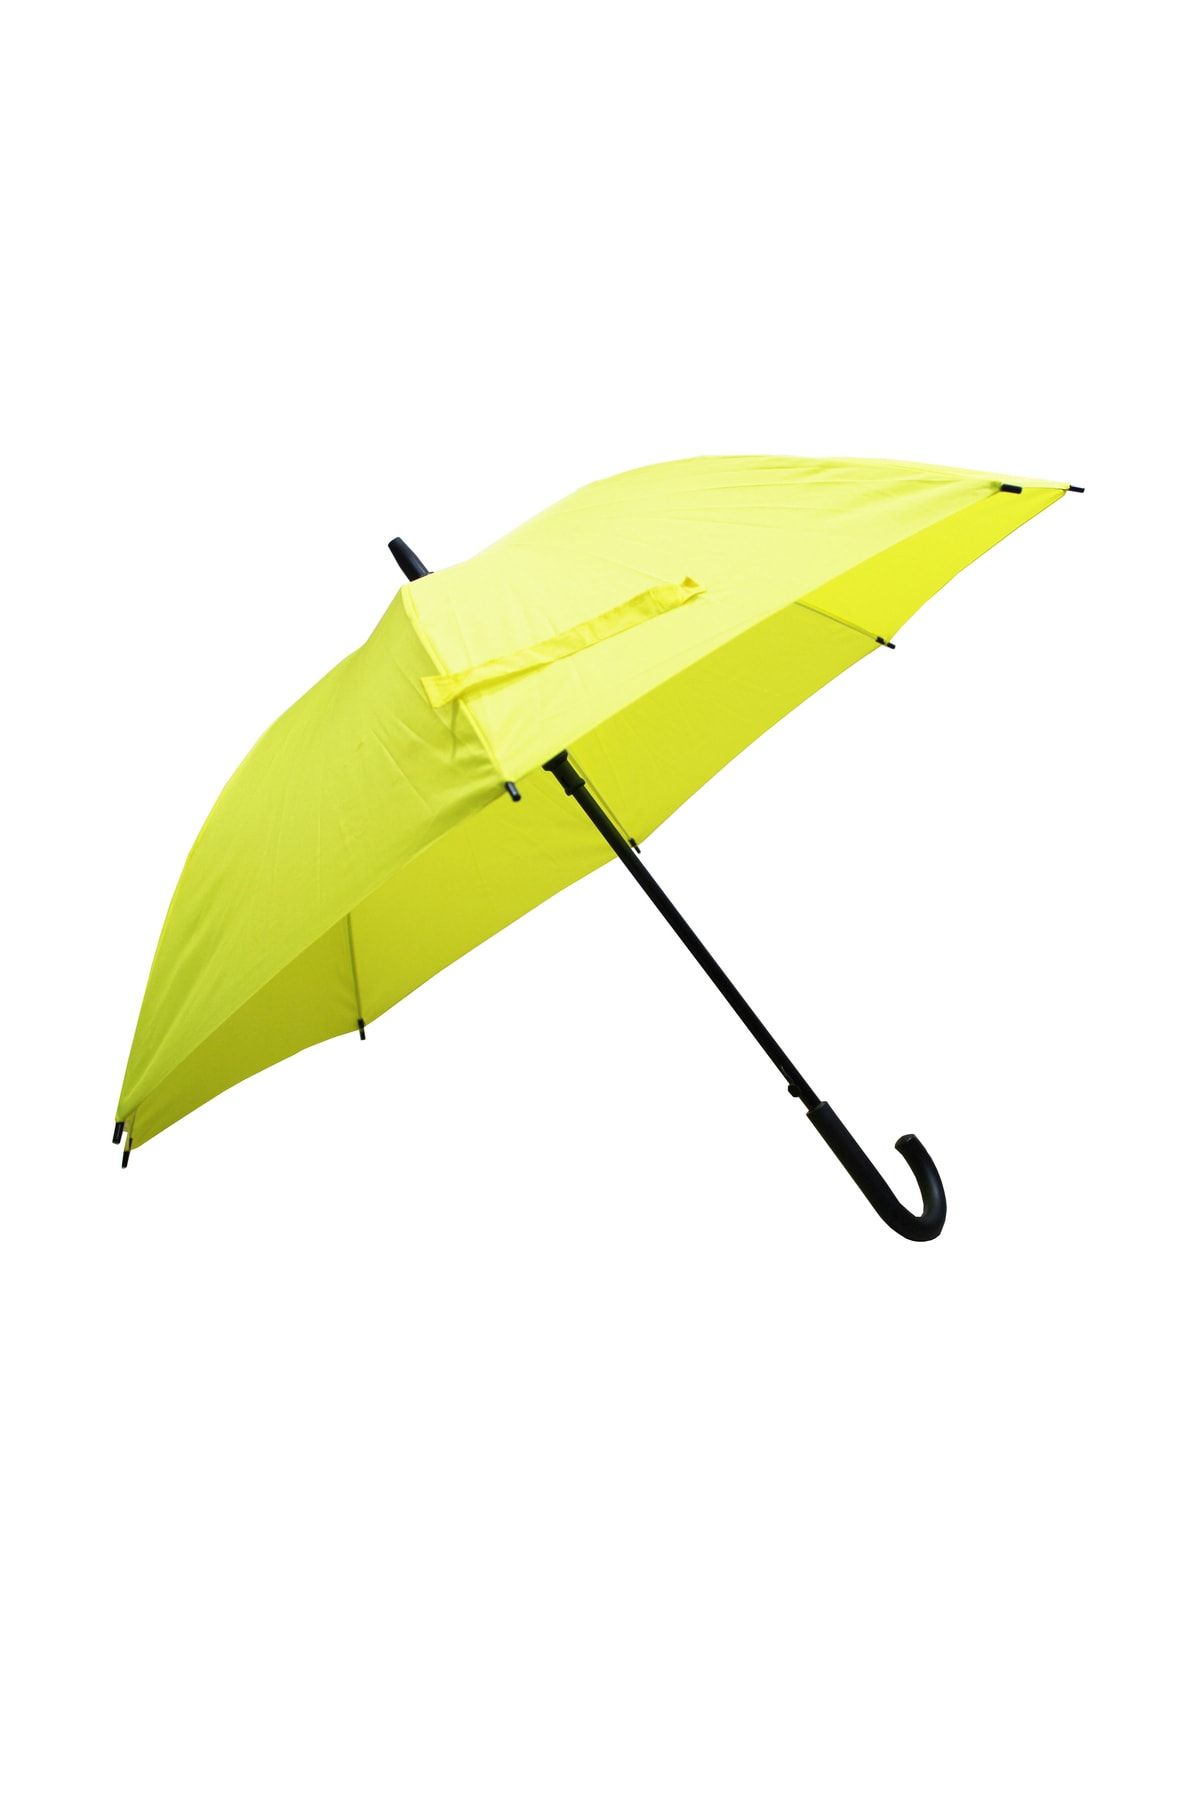 Sunlife 8 Telli Otomatik Fiberglass Baston Sarı Renkli Yağmur Şemsiyesi